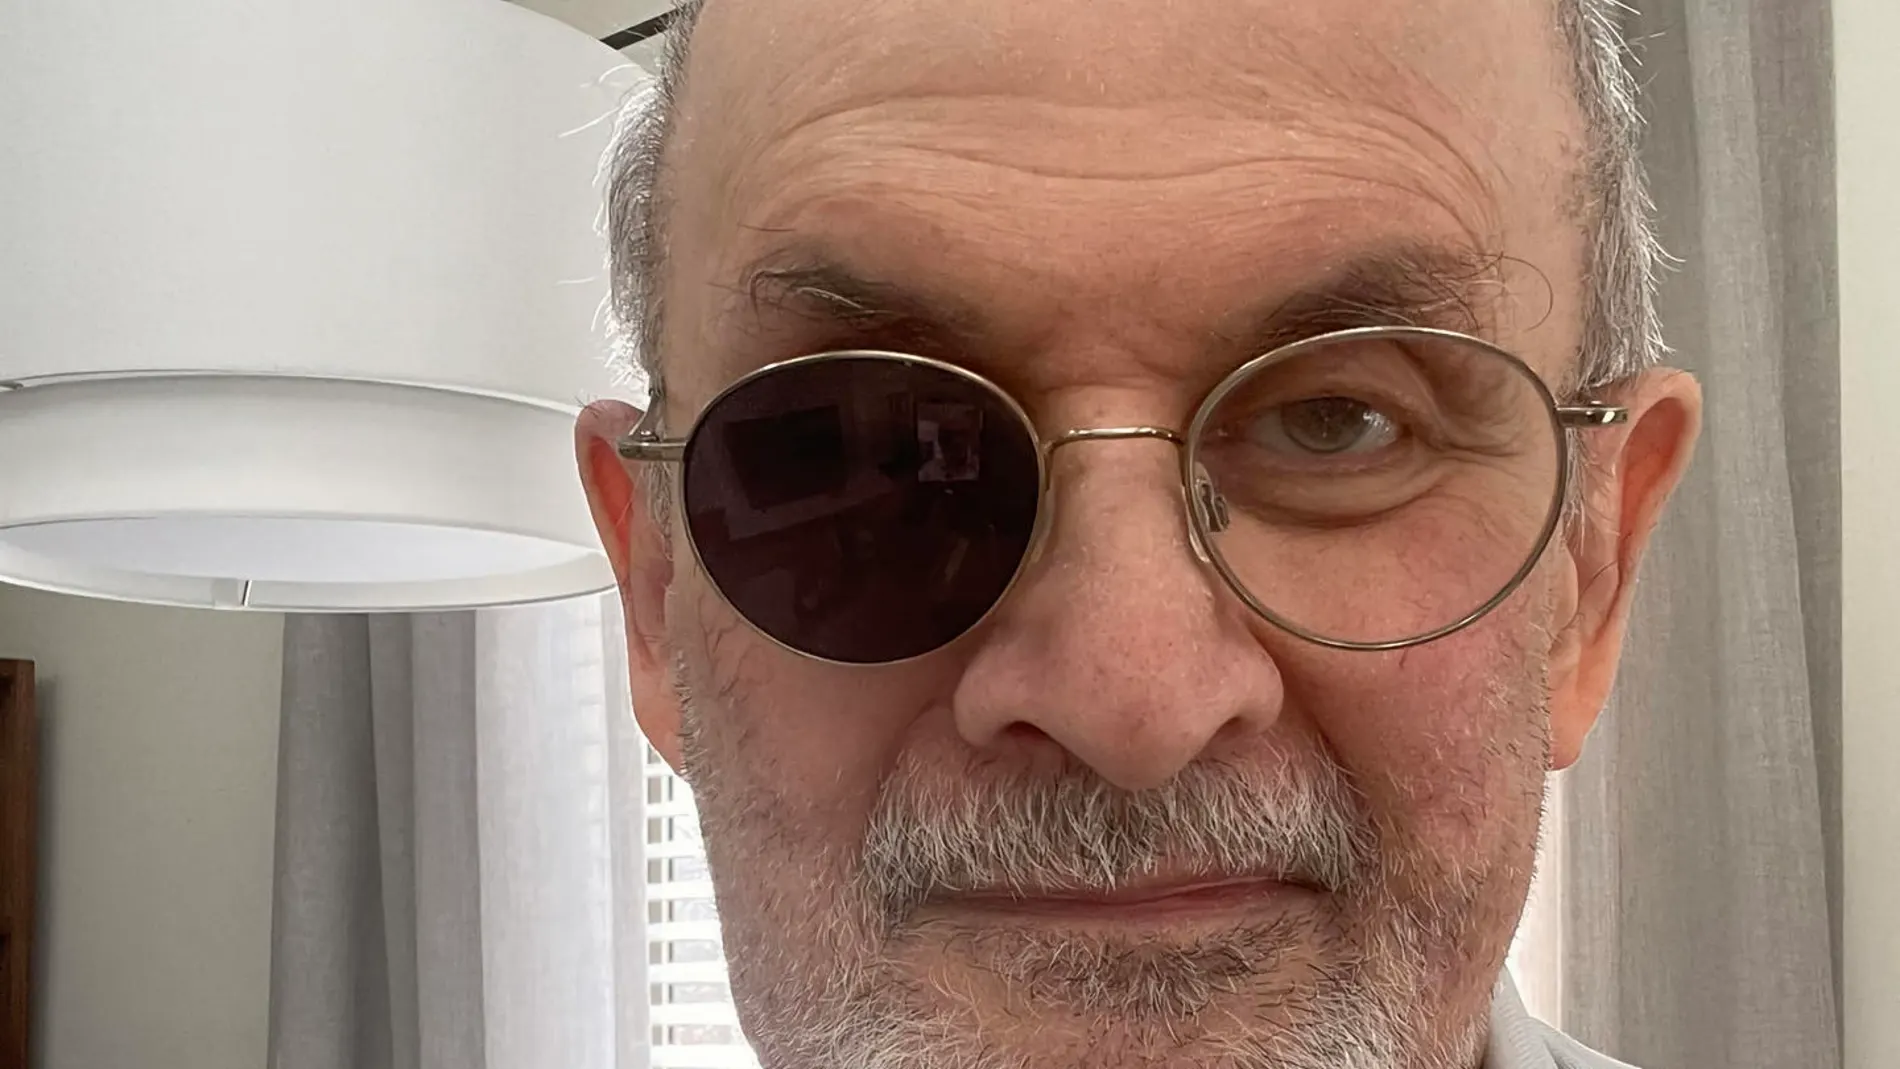 Fotografía publicada por el escritor Salman Rushdie en su cuenta de Twitter 